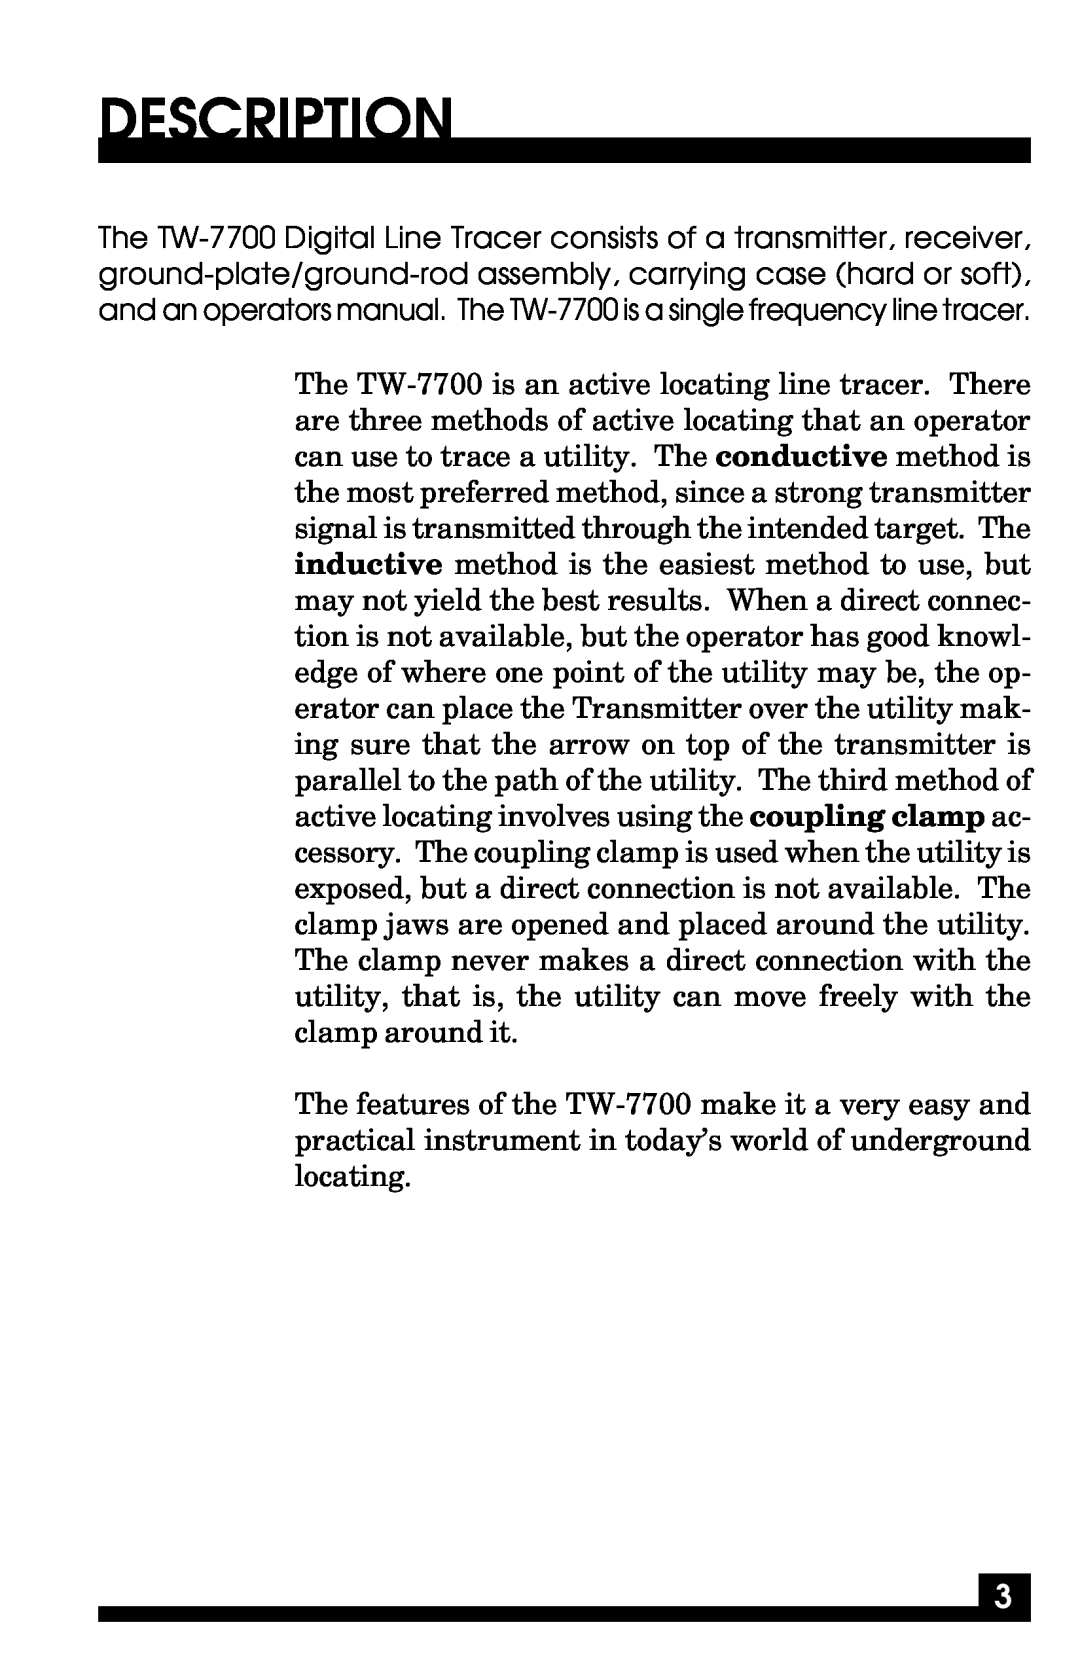 Fisher TW-7700 manual Description 